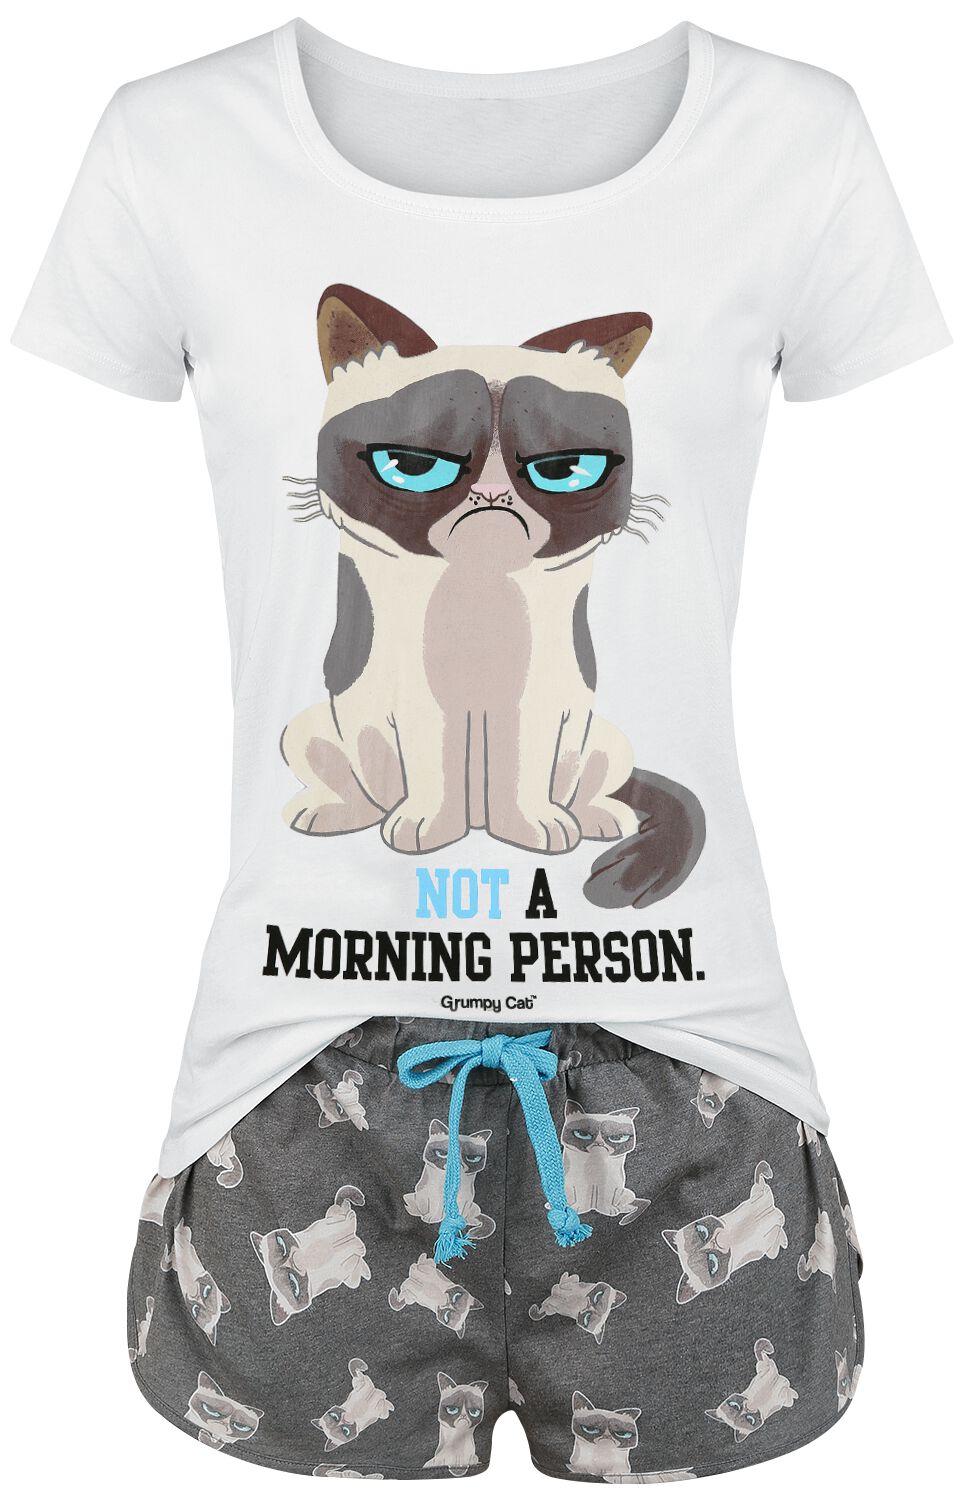 Grumpy Cat Schlafanzug - Not A Morning Person! - S bis 3XL - für Damen - Größe XXL - grau/weiß  - EMP exklusives Merchandise! von Grumpy Cat